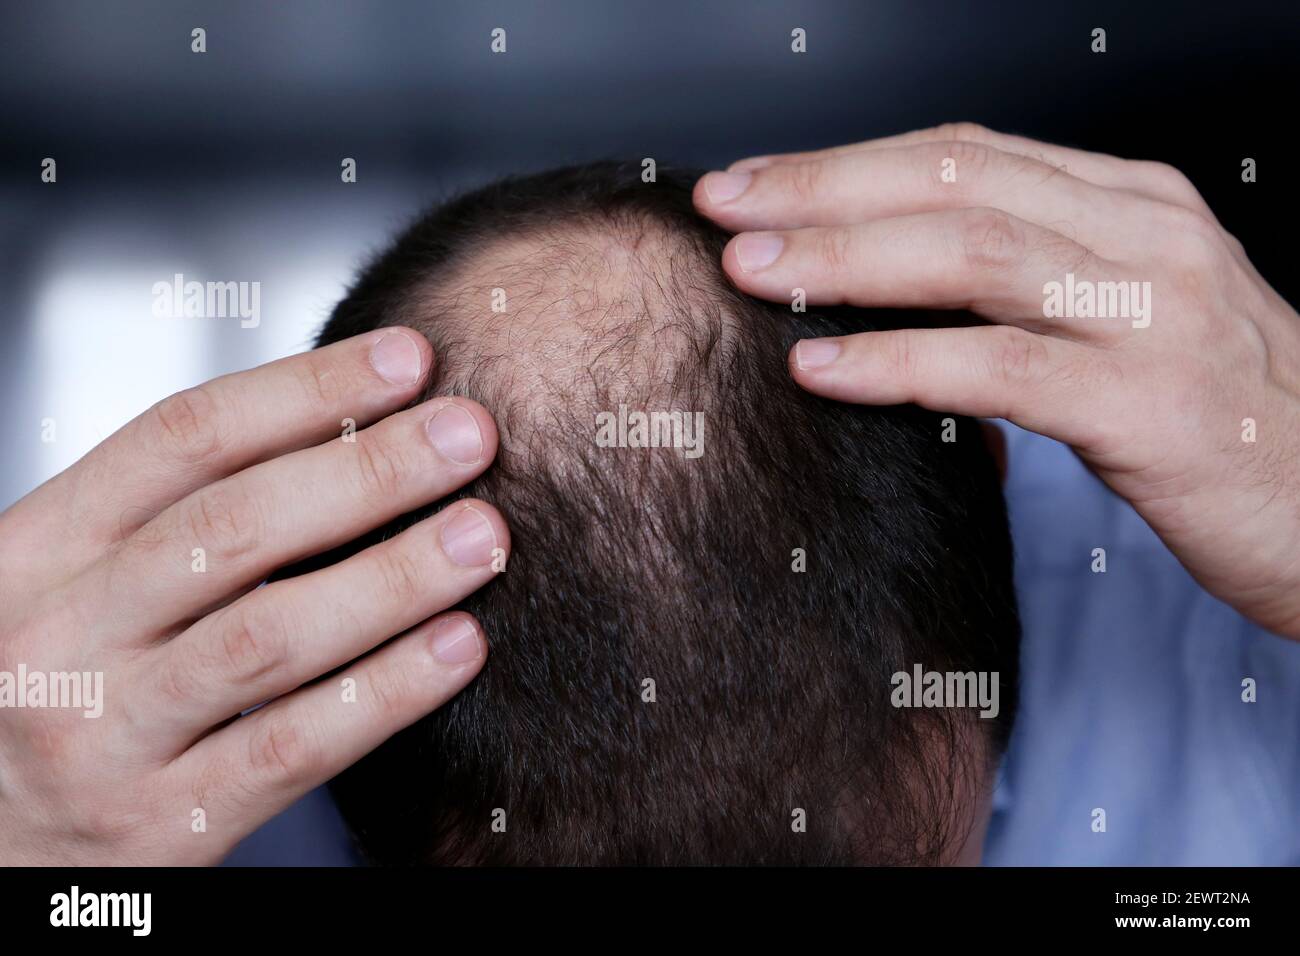 Kahlheit, Mann besorgt über Haarausfall. Männlicher Kopf mit einem kahlen, selektiven Fokus auf der Hand Stockfoto